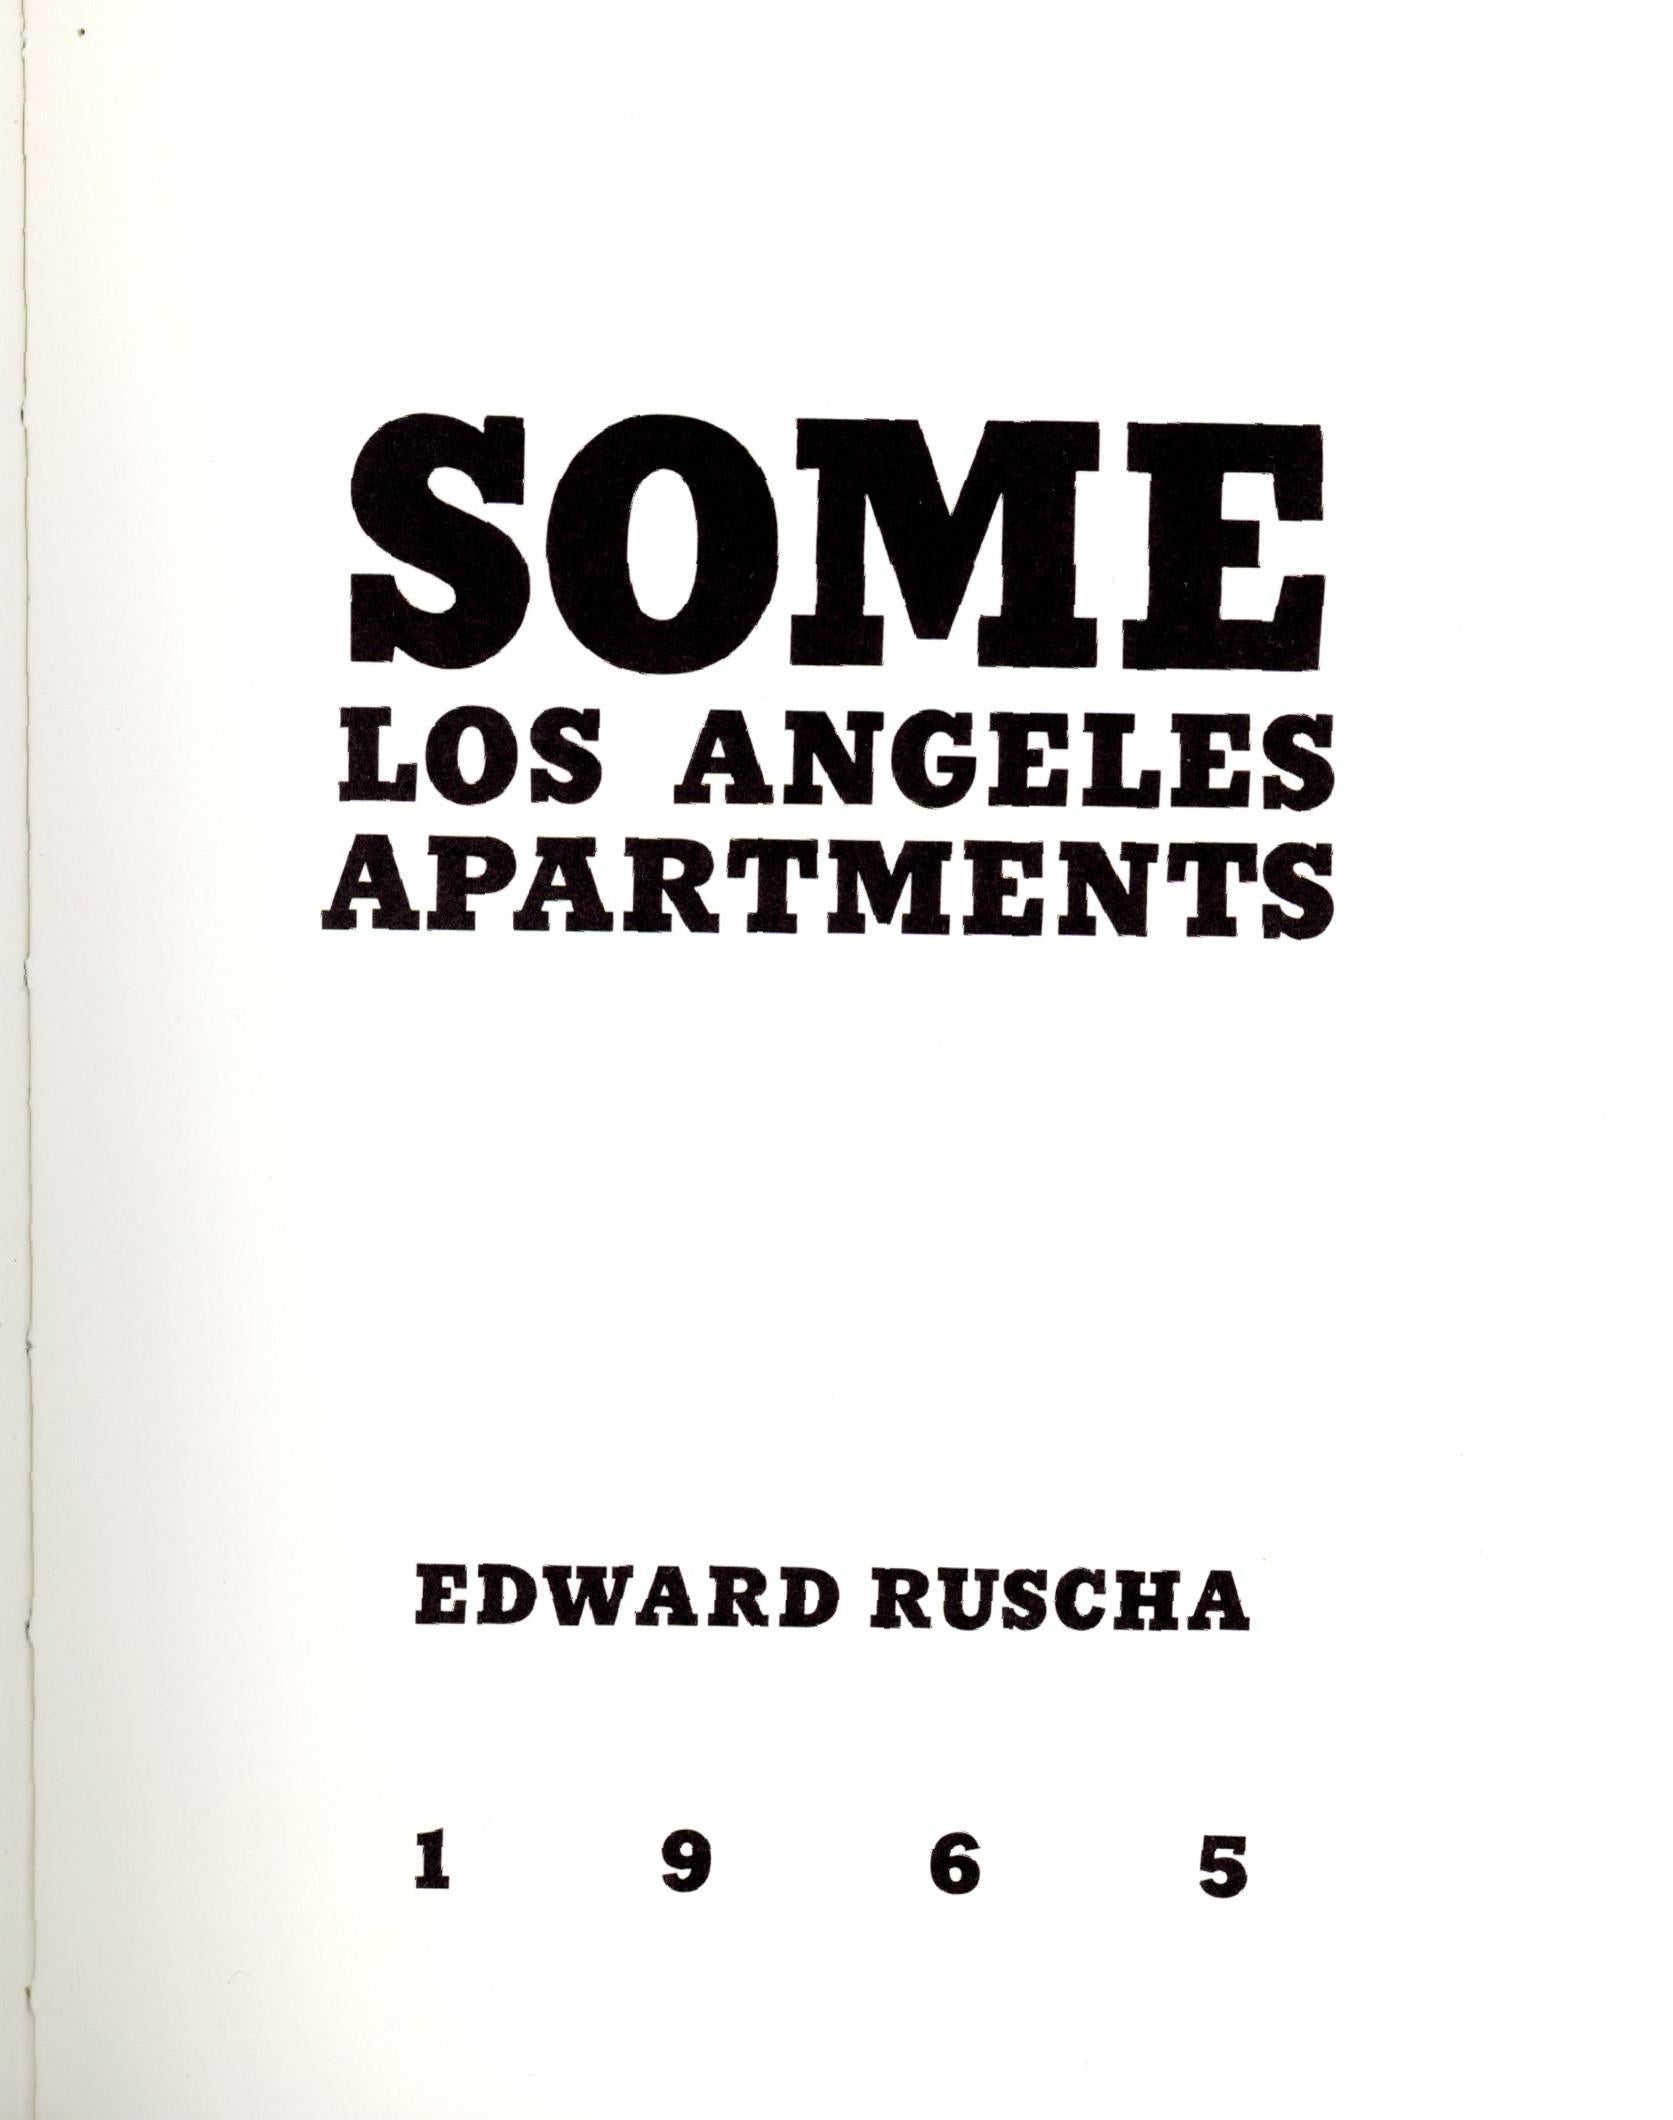 Certains appartements de Los Angeles - Livre d'artiste publié en édition limitée à 3000 exemplaires - Photograph de Ed Ruscha